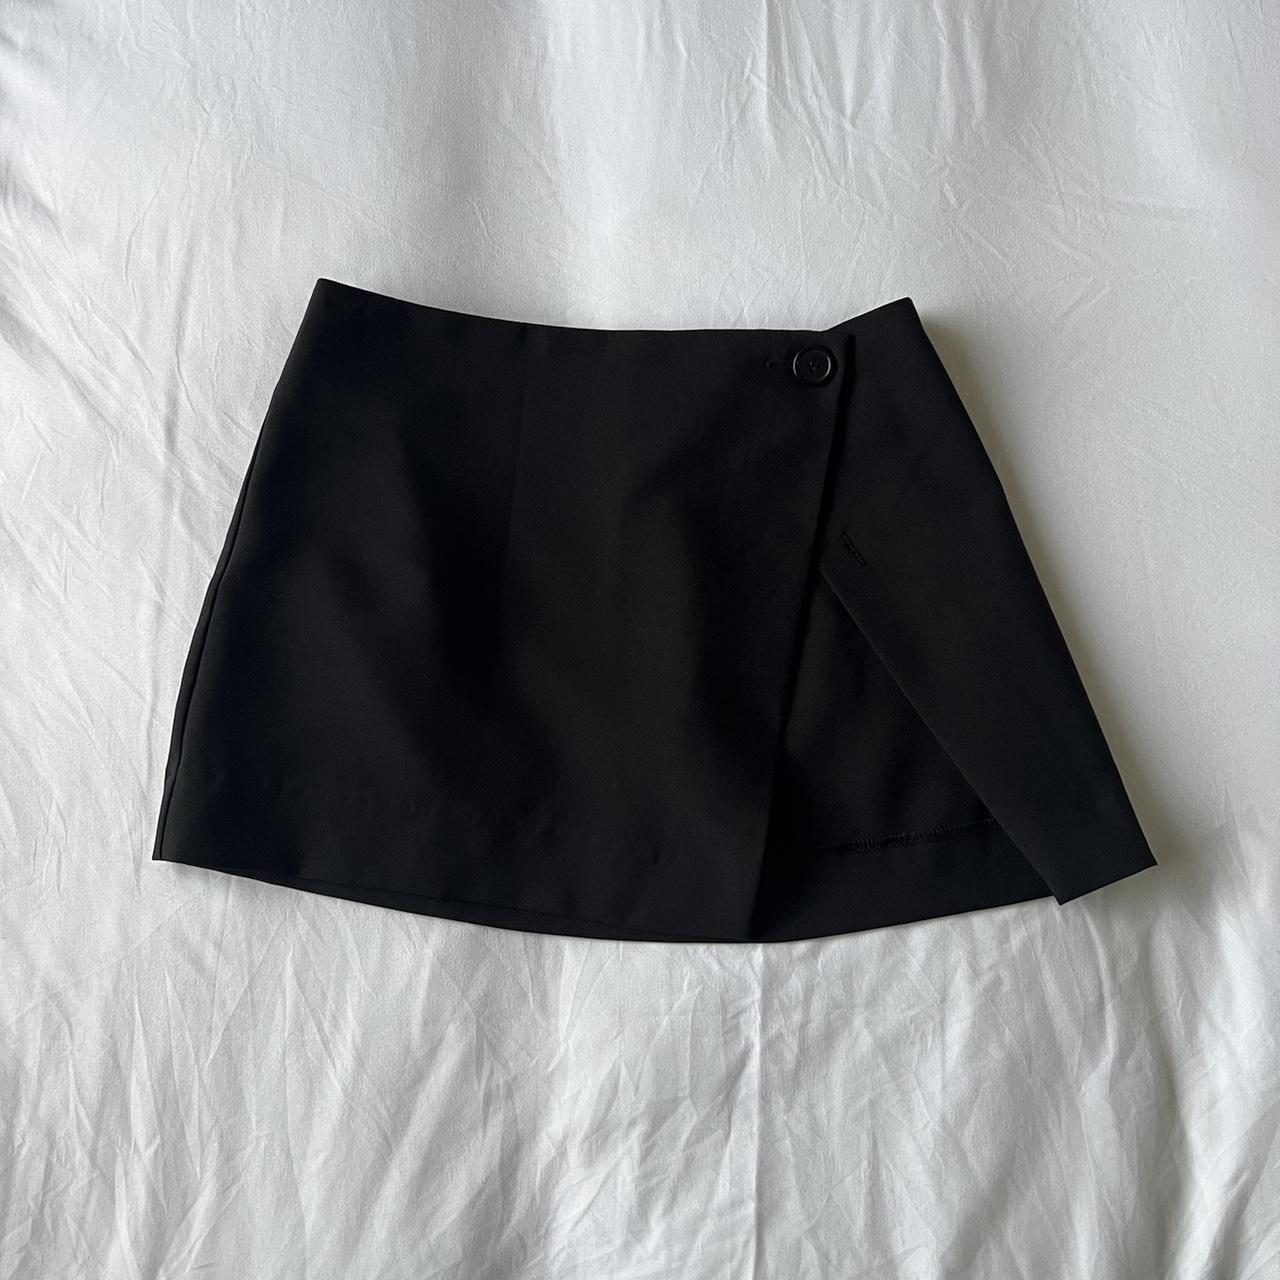 Black mini skirt with slit , Size 4 , Adjustable